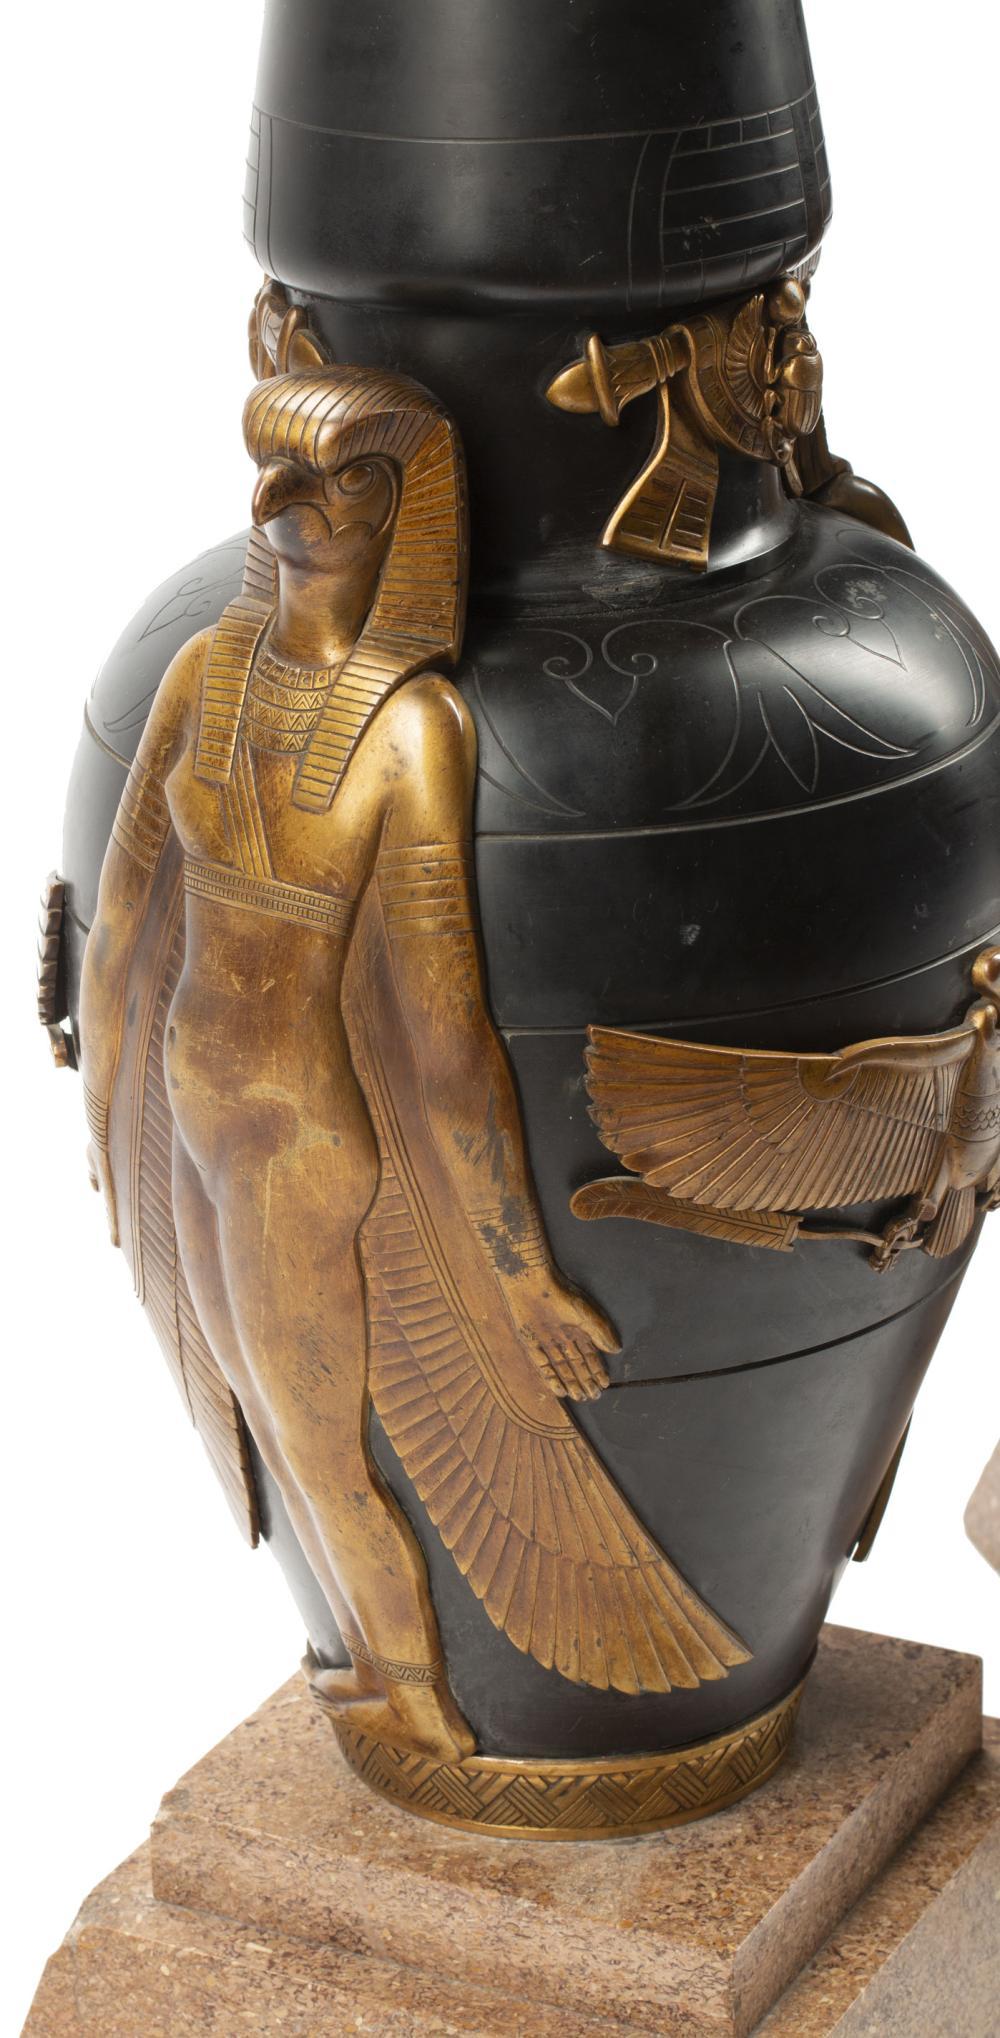 Zwei französische Vasen im Stil des ägyptischen Art-Déco-Revivals aus schwarzem Schiefergestein mit eingravierten Motiven und fein gegossenen und vergoldeten ägyptischen Motiven, darunter prominente Figuren des Sonnengottes Horus, der als Falke